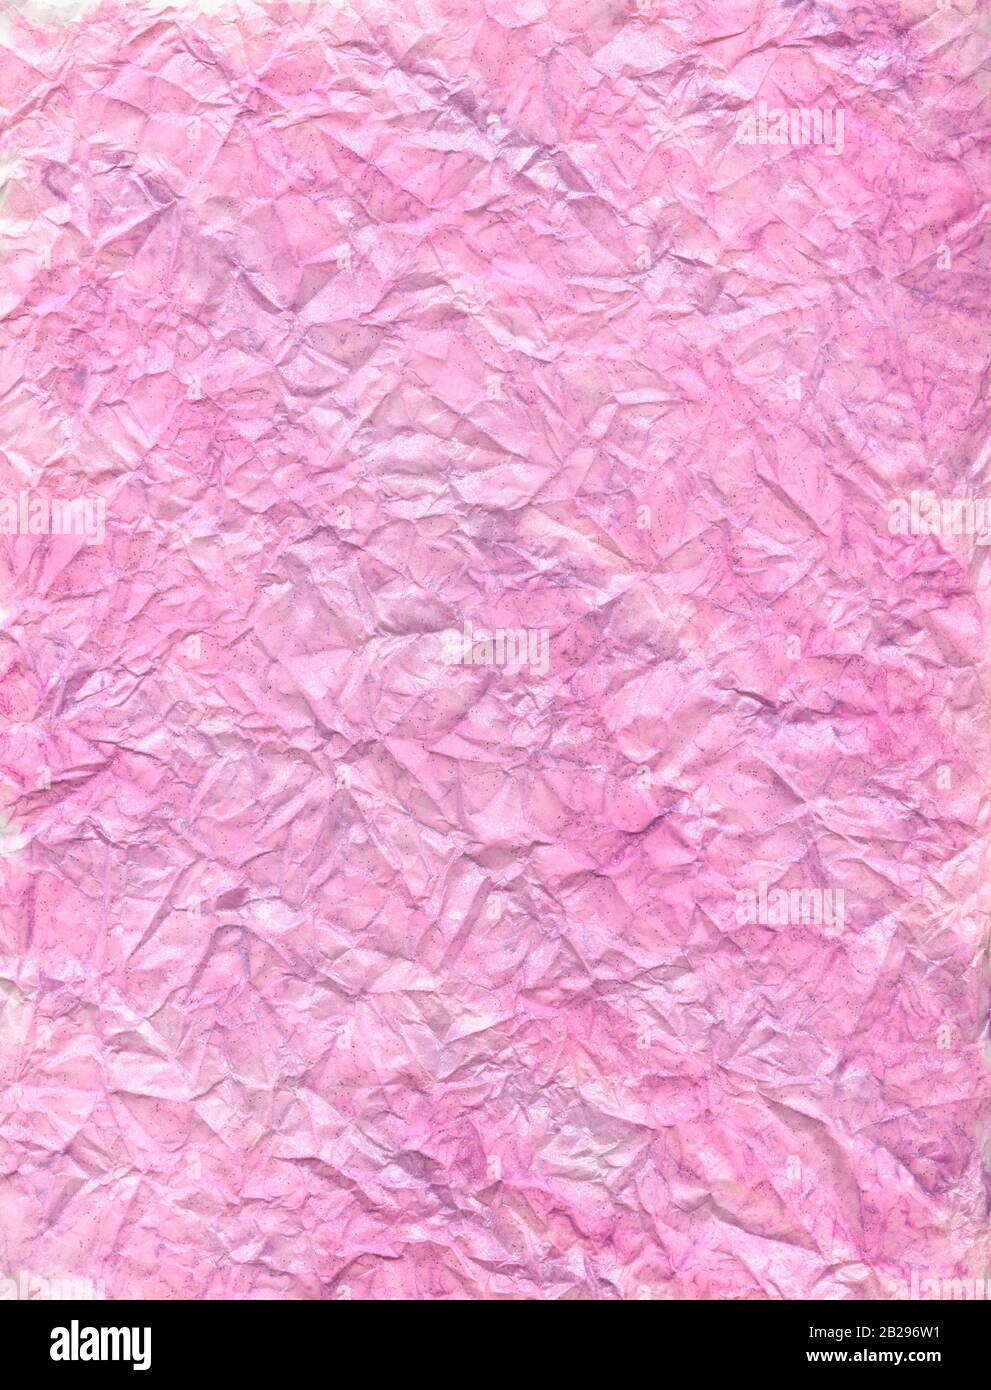 Papel pintado a mano de color rosa con arrugas y arrugado. Se trata de una secuencia de alta resolución que muestra todos los detalles. Foto de stock